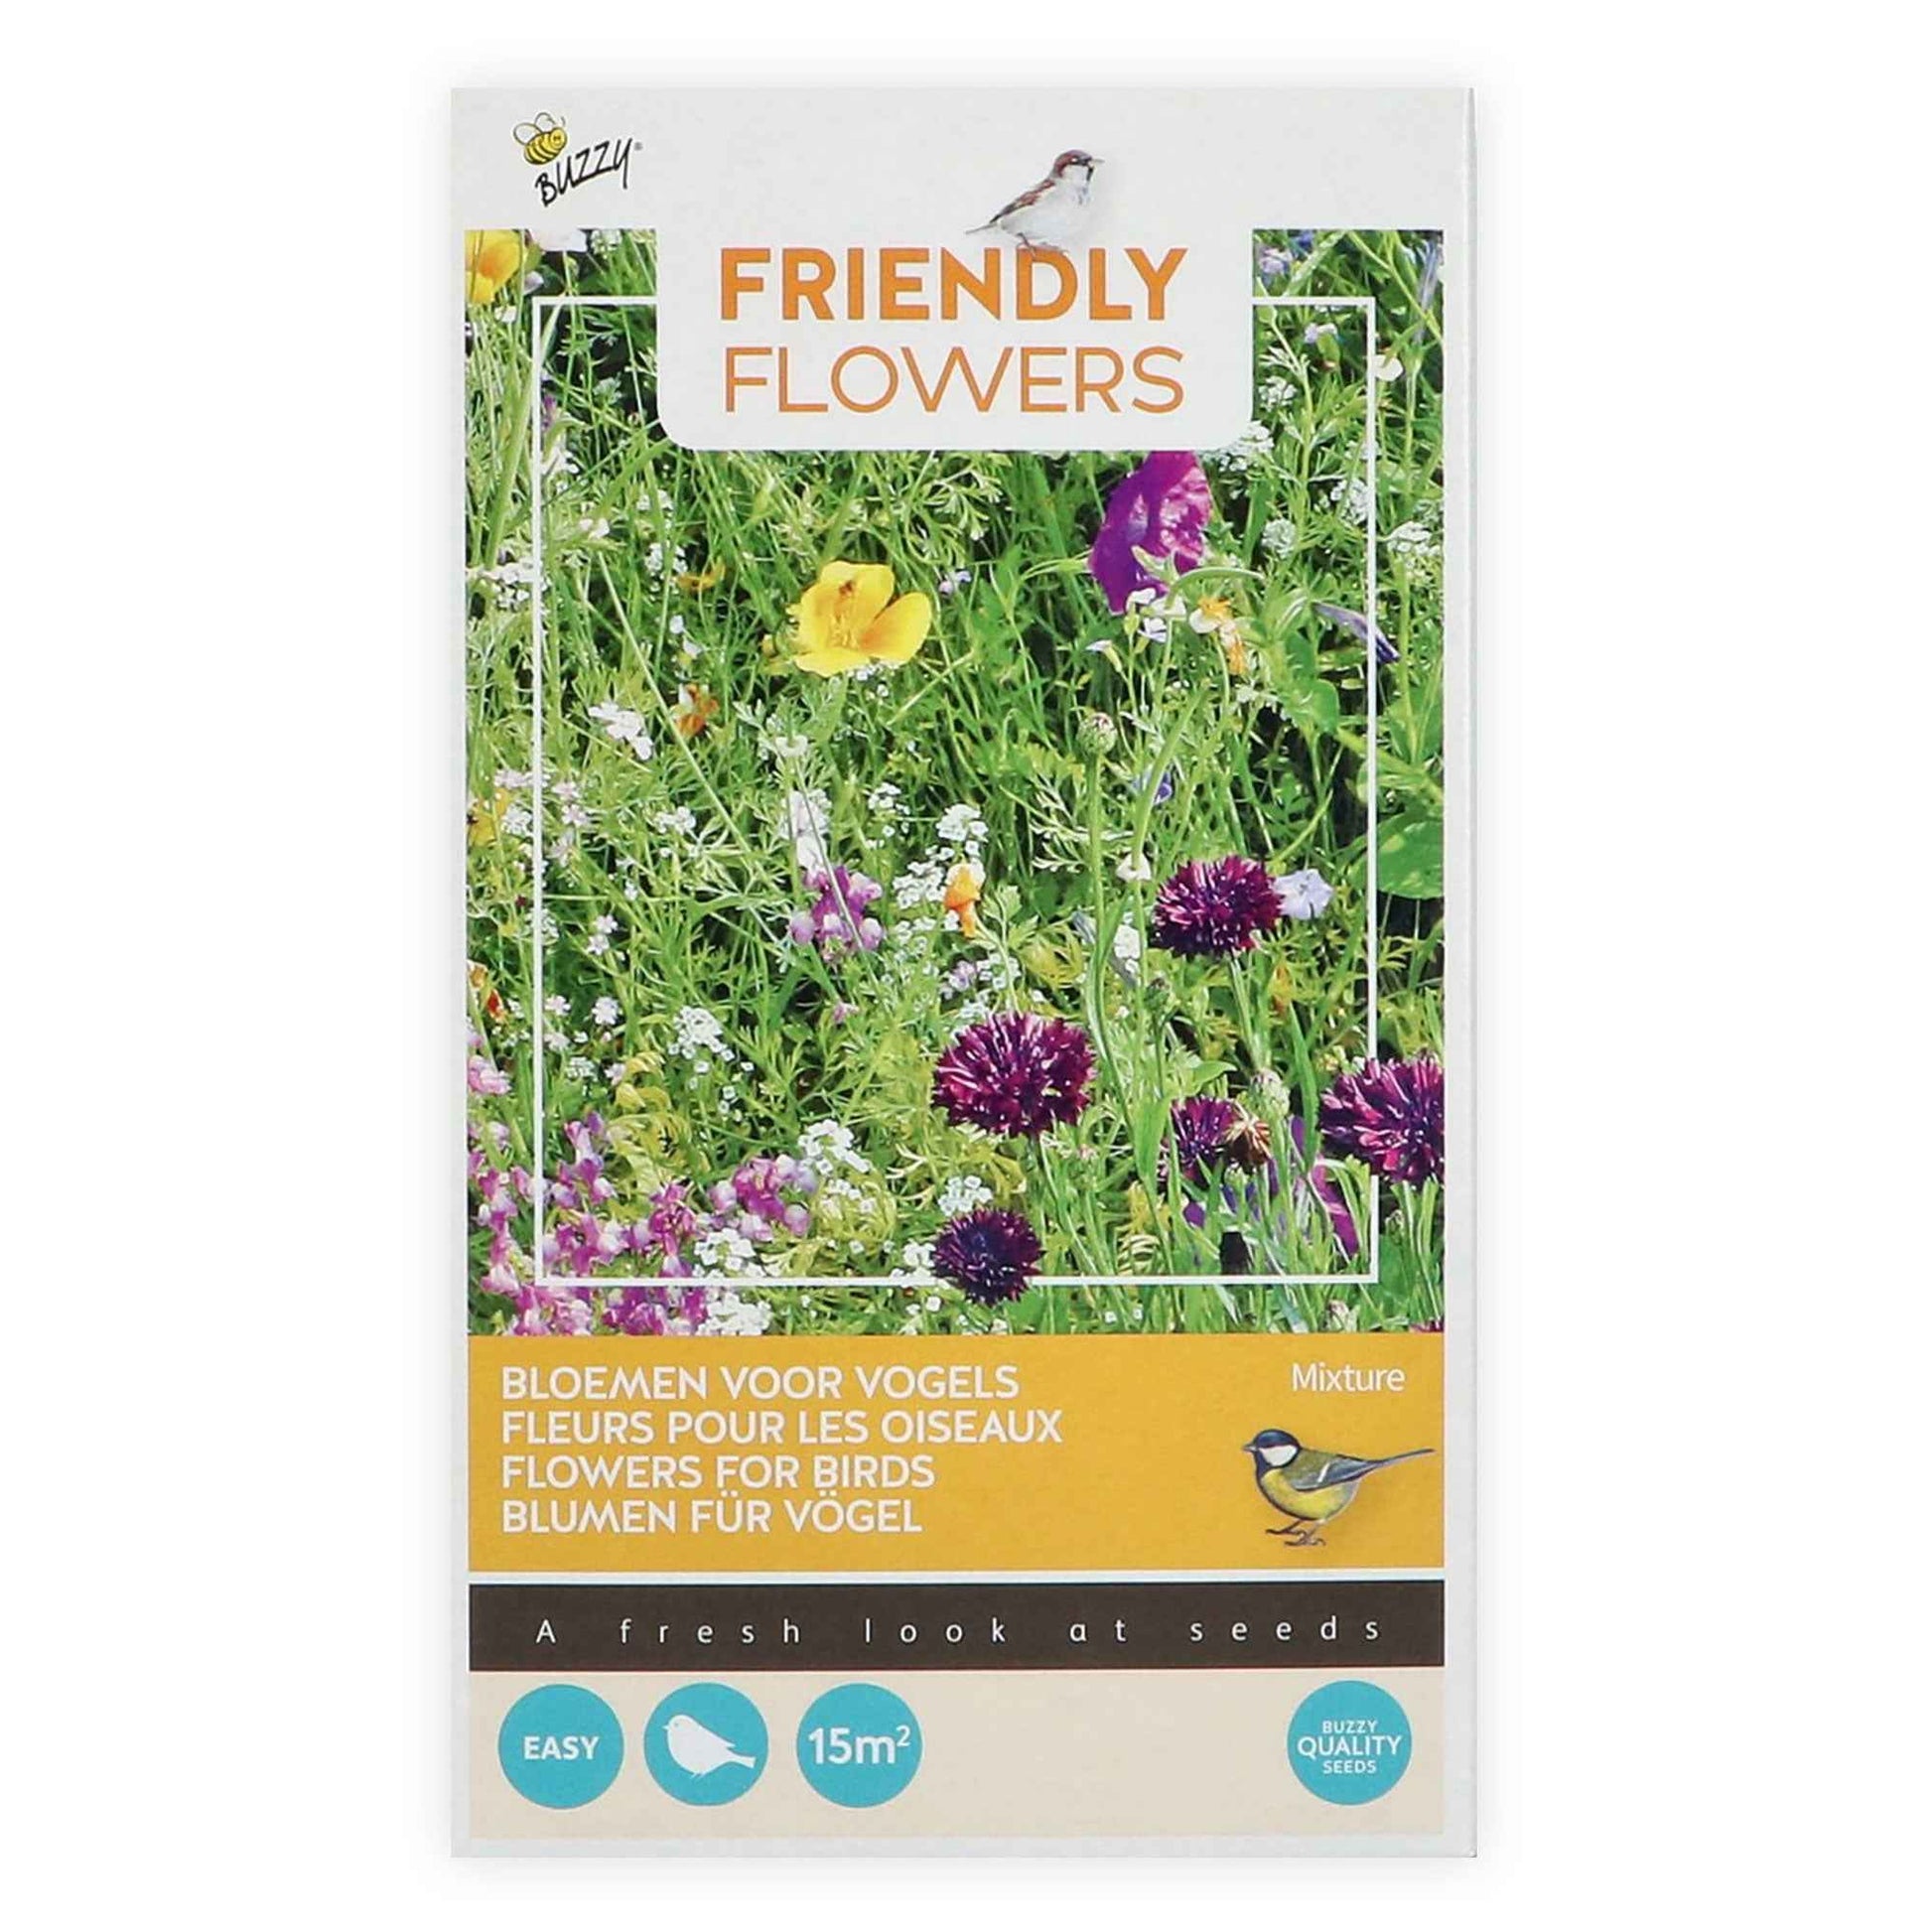 Fleurs qui attirent les oiseaux - Friendly Flowers Mélange incl. granulat - Semences de fleurs - Graines de fleurs